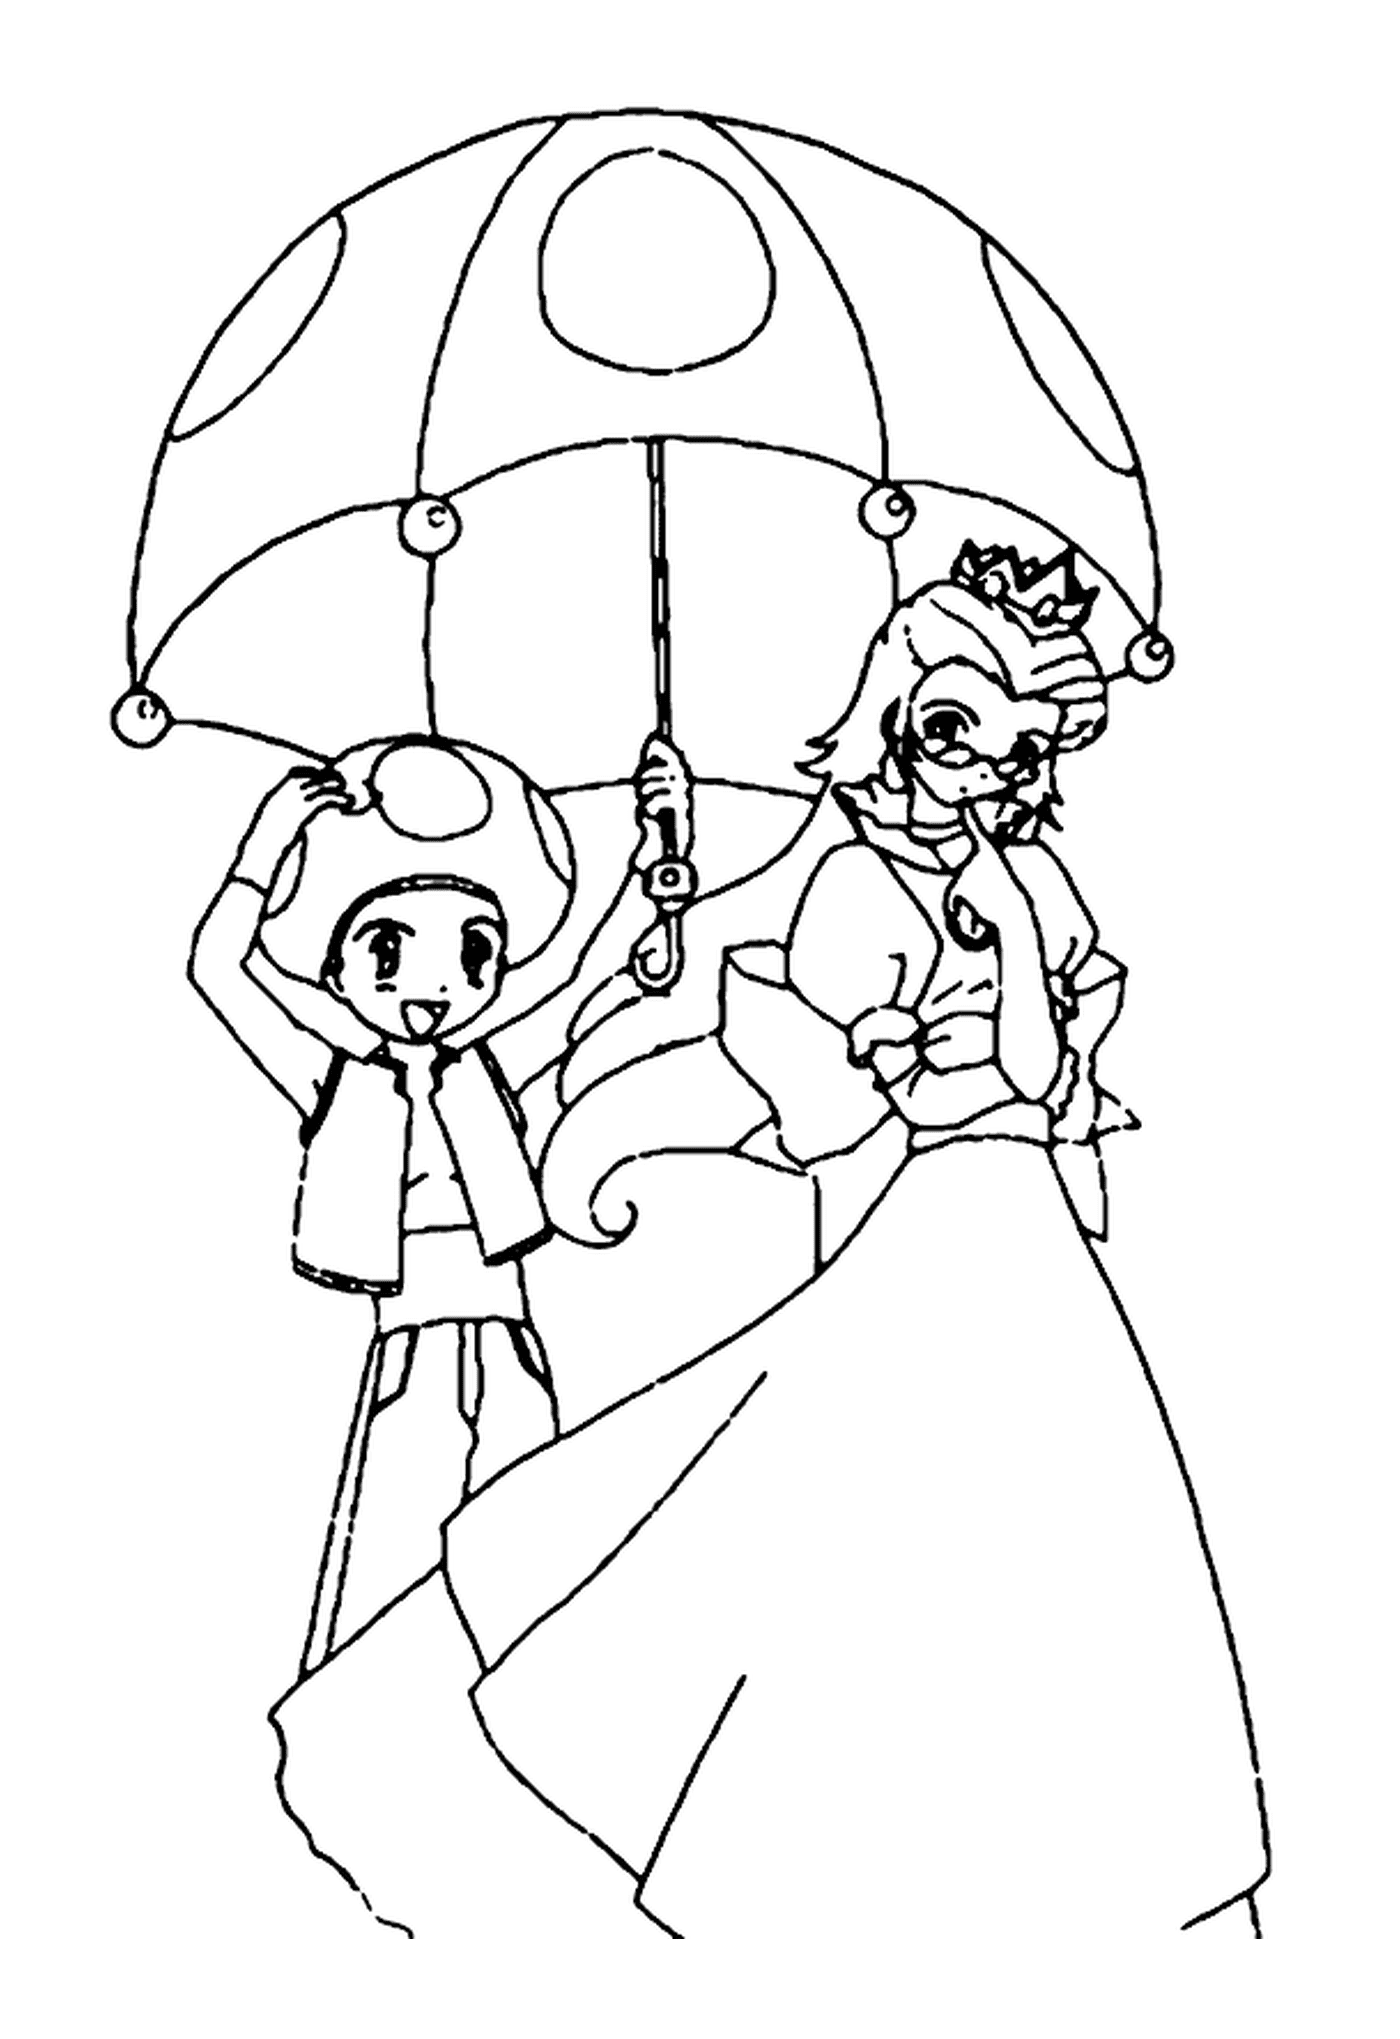  A princesa e o sapo, uma mulher idosa segurando um guarda-chuva e um menino segurando um guarda-chuva 